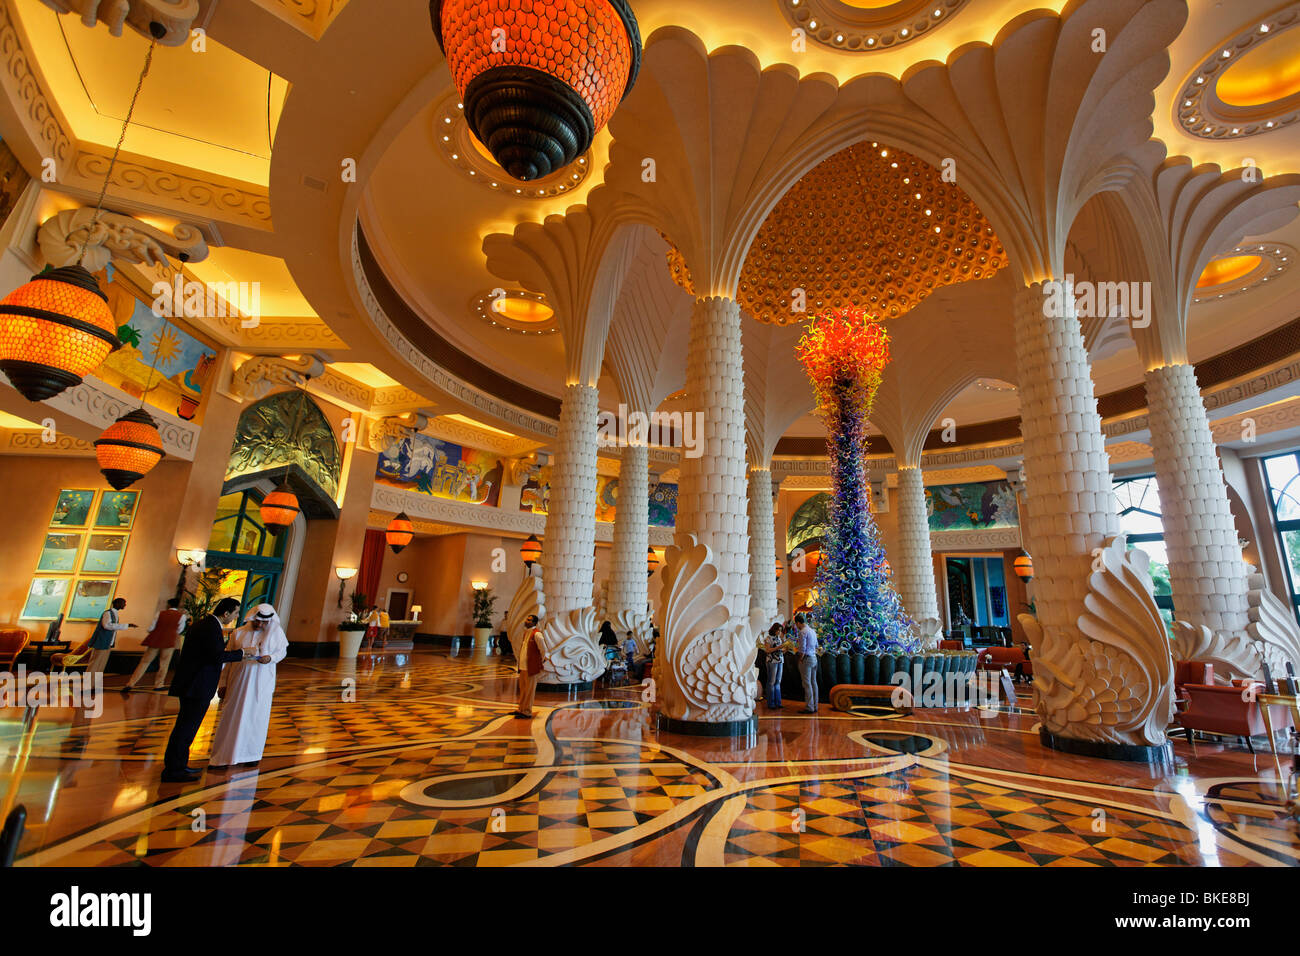 Lobby of Atlantis Hotel, The Palm Jumeirah, Dubai , Stock Photo